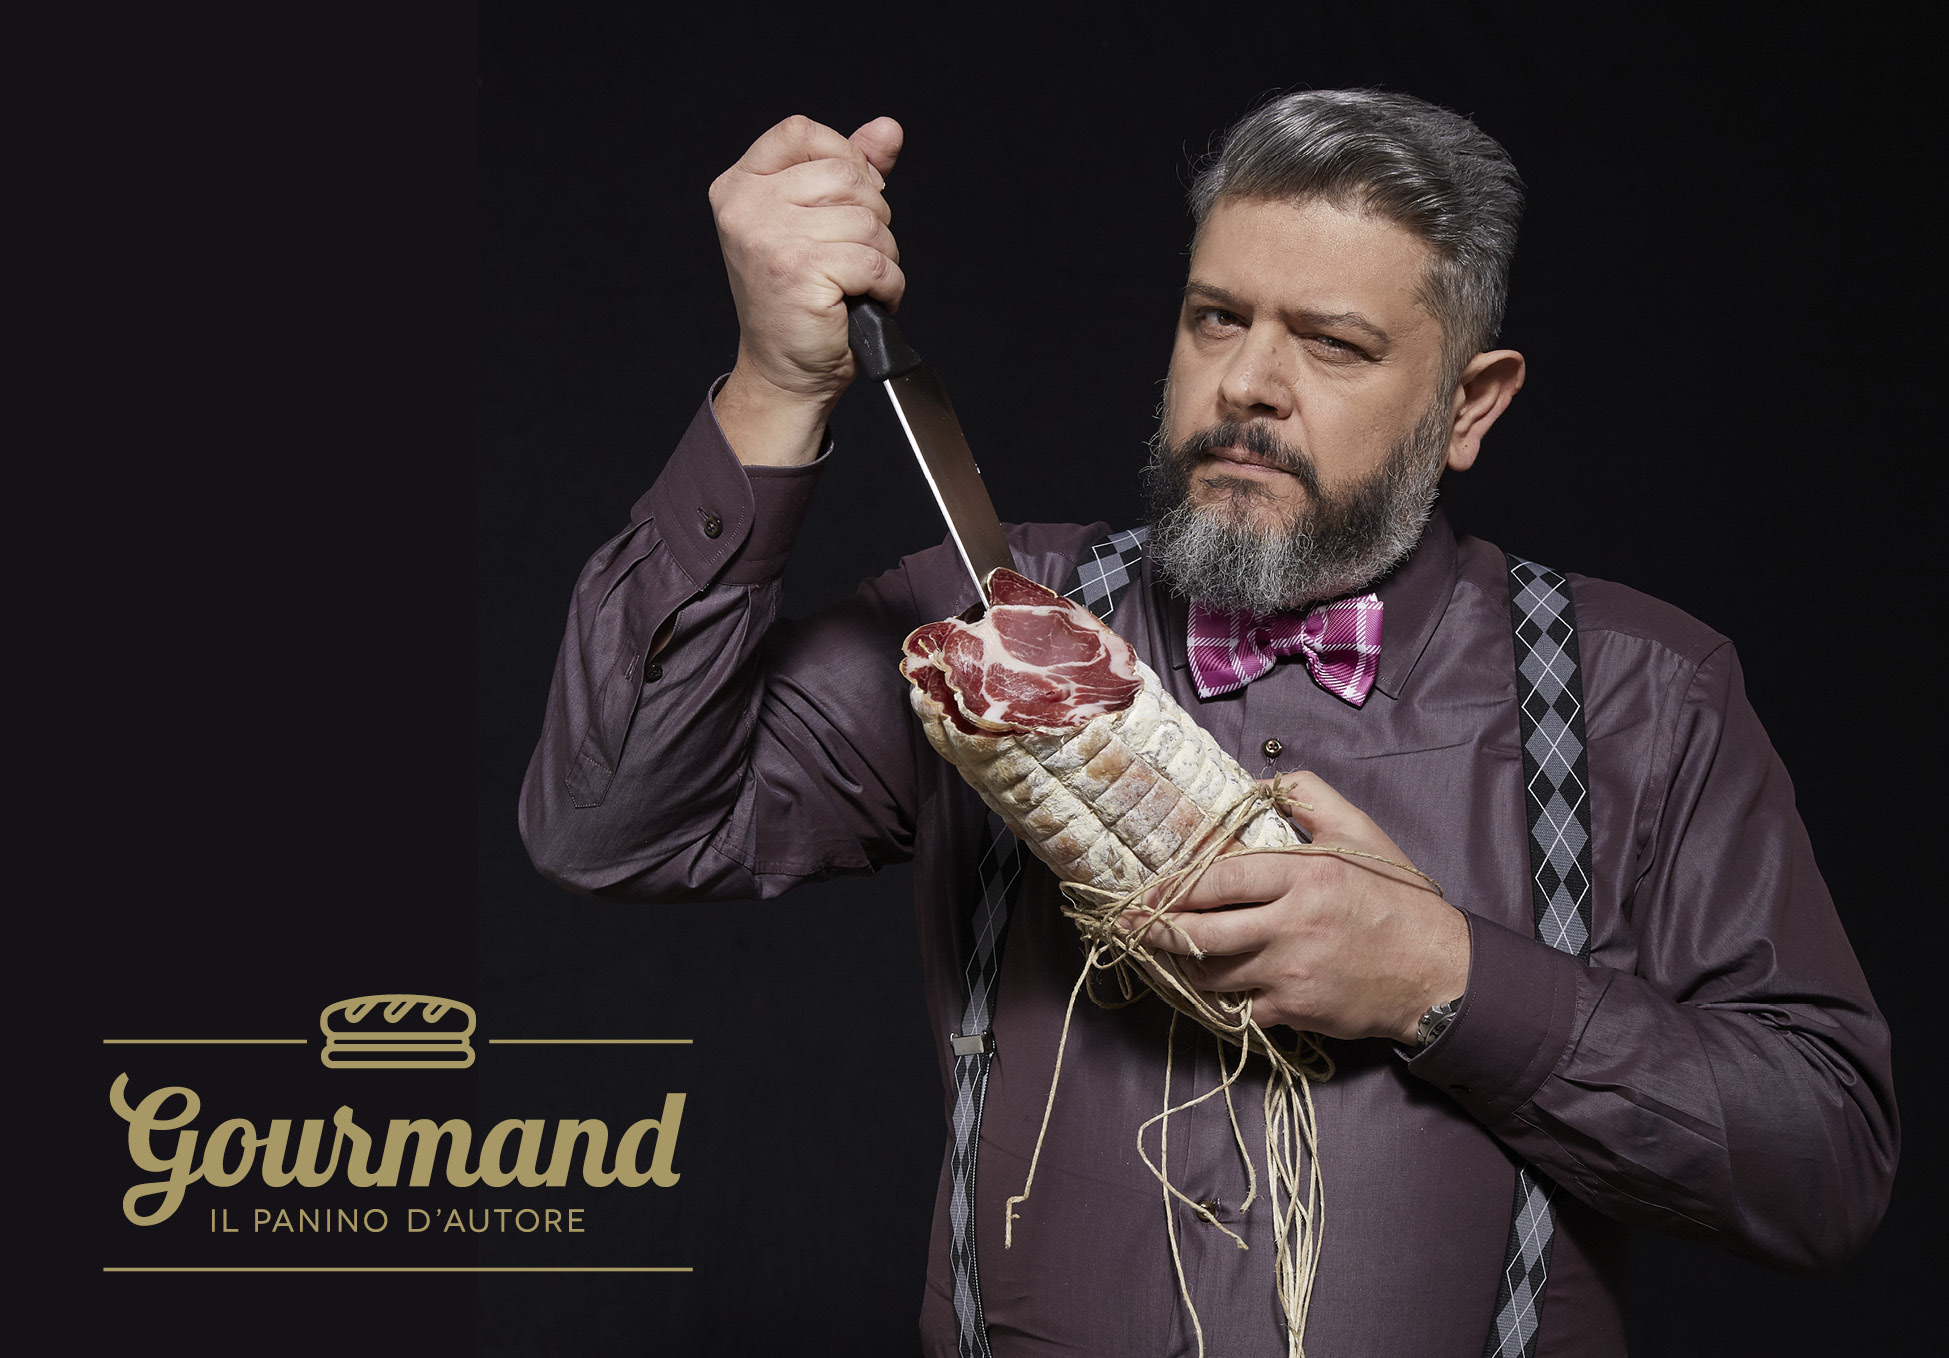 Gourmand Portrait by Remo Di Gennaro